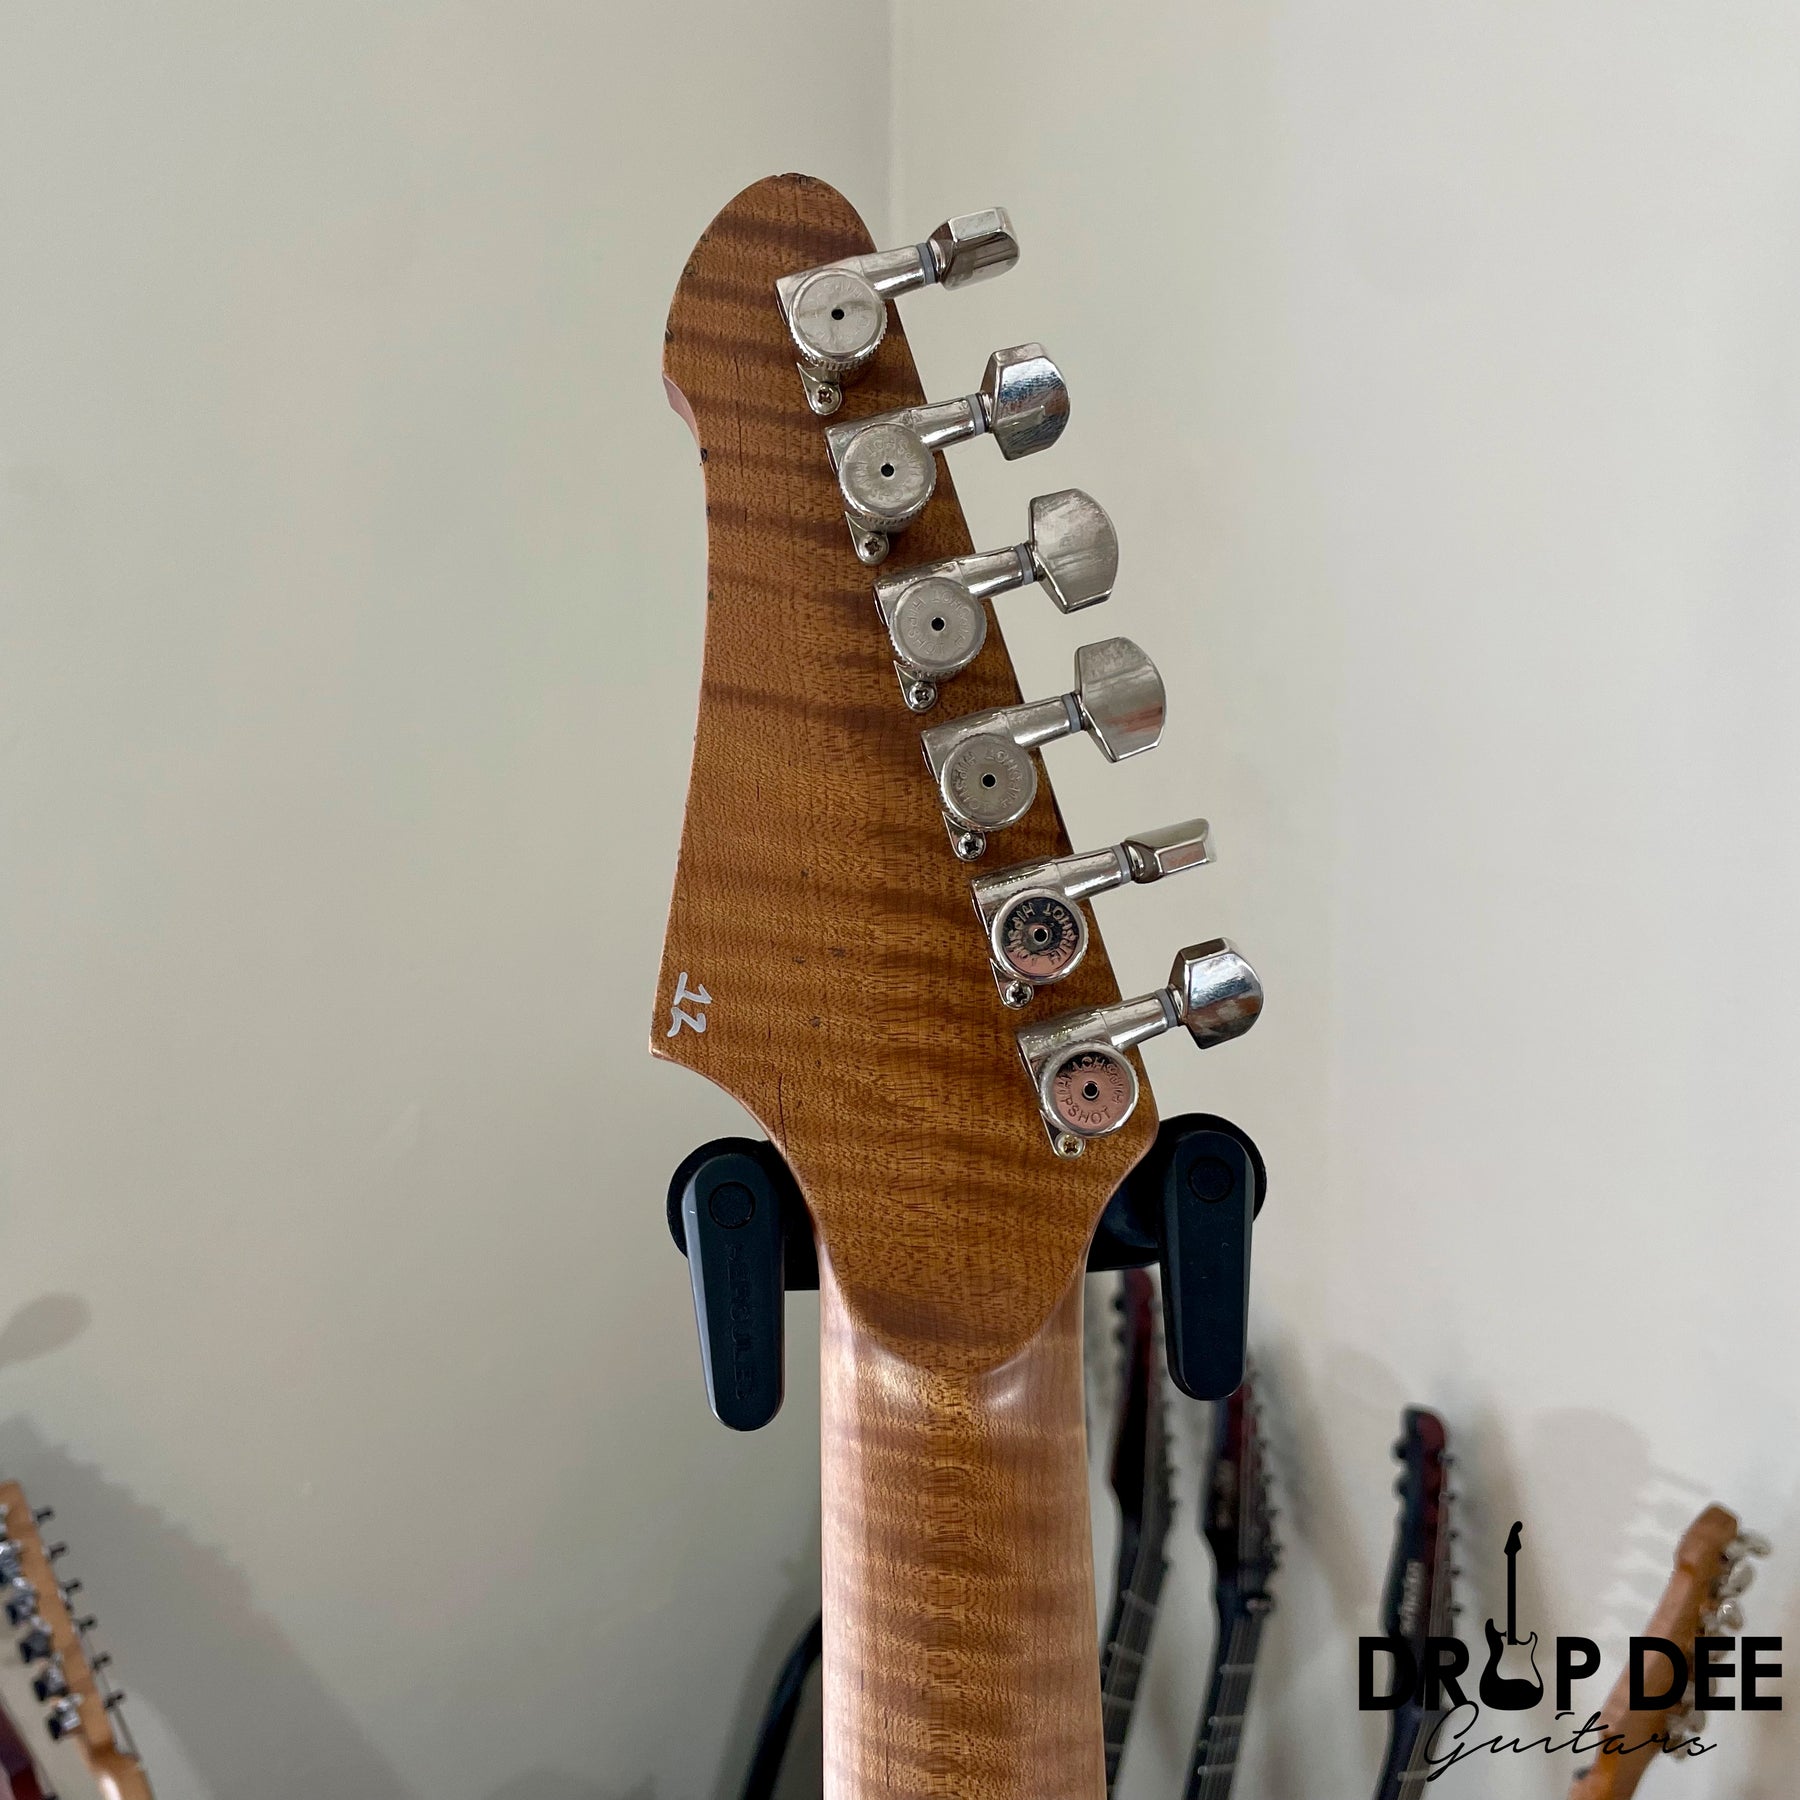 Balaguer USA Series Espada Electric Guitar w/ Case